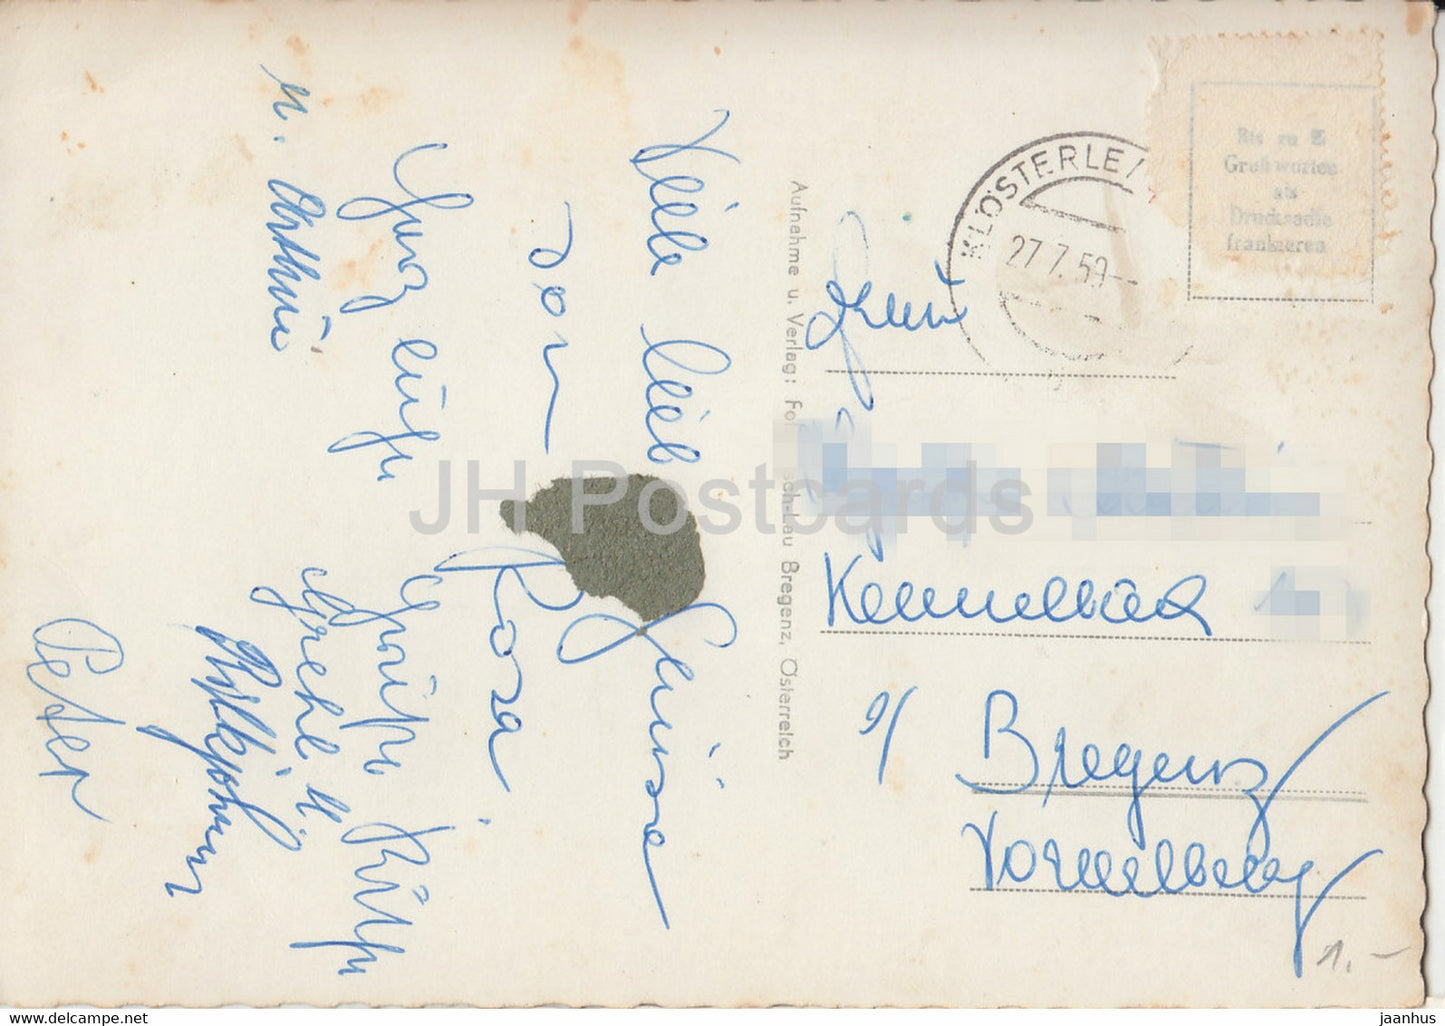 Schrocken i Bregenzerwald geg Kunzelspitze 2415 m - old postcard - 1959 - Austria - used